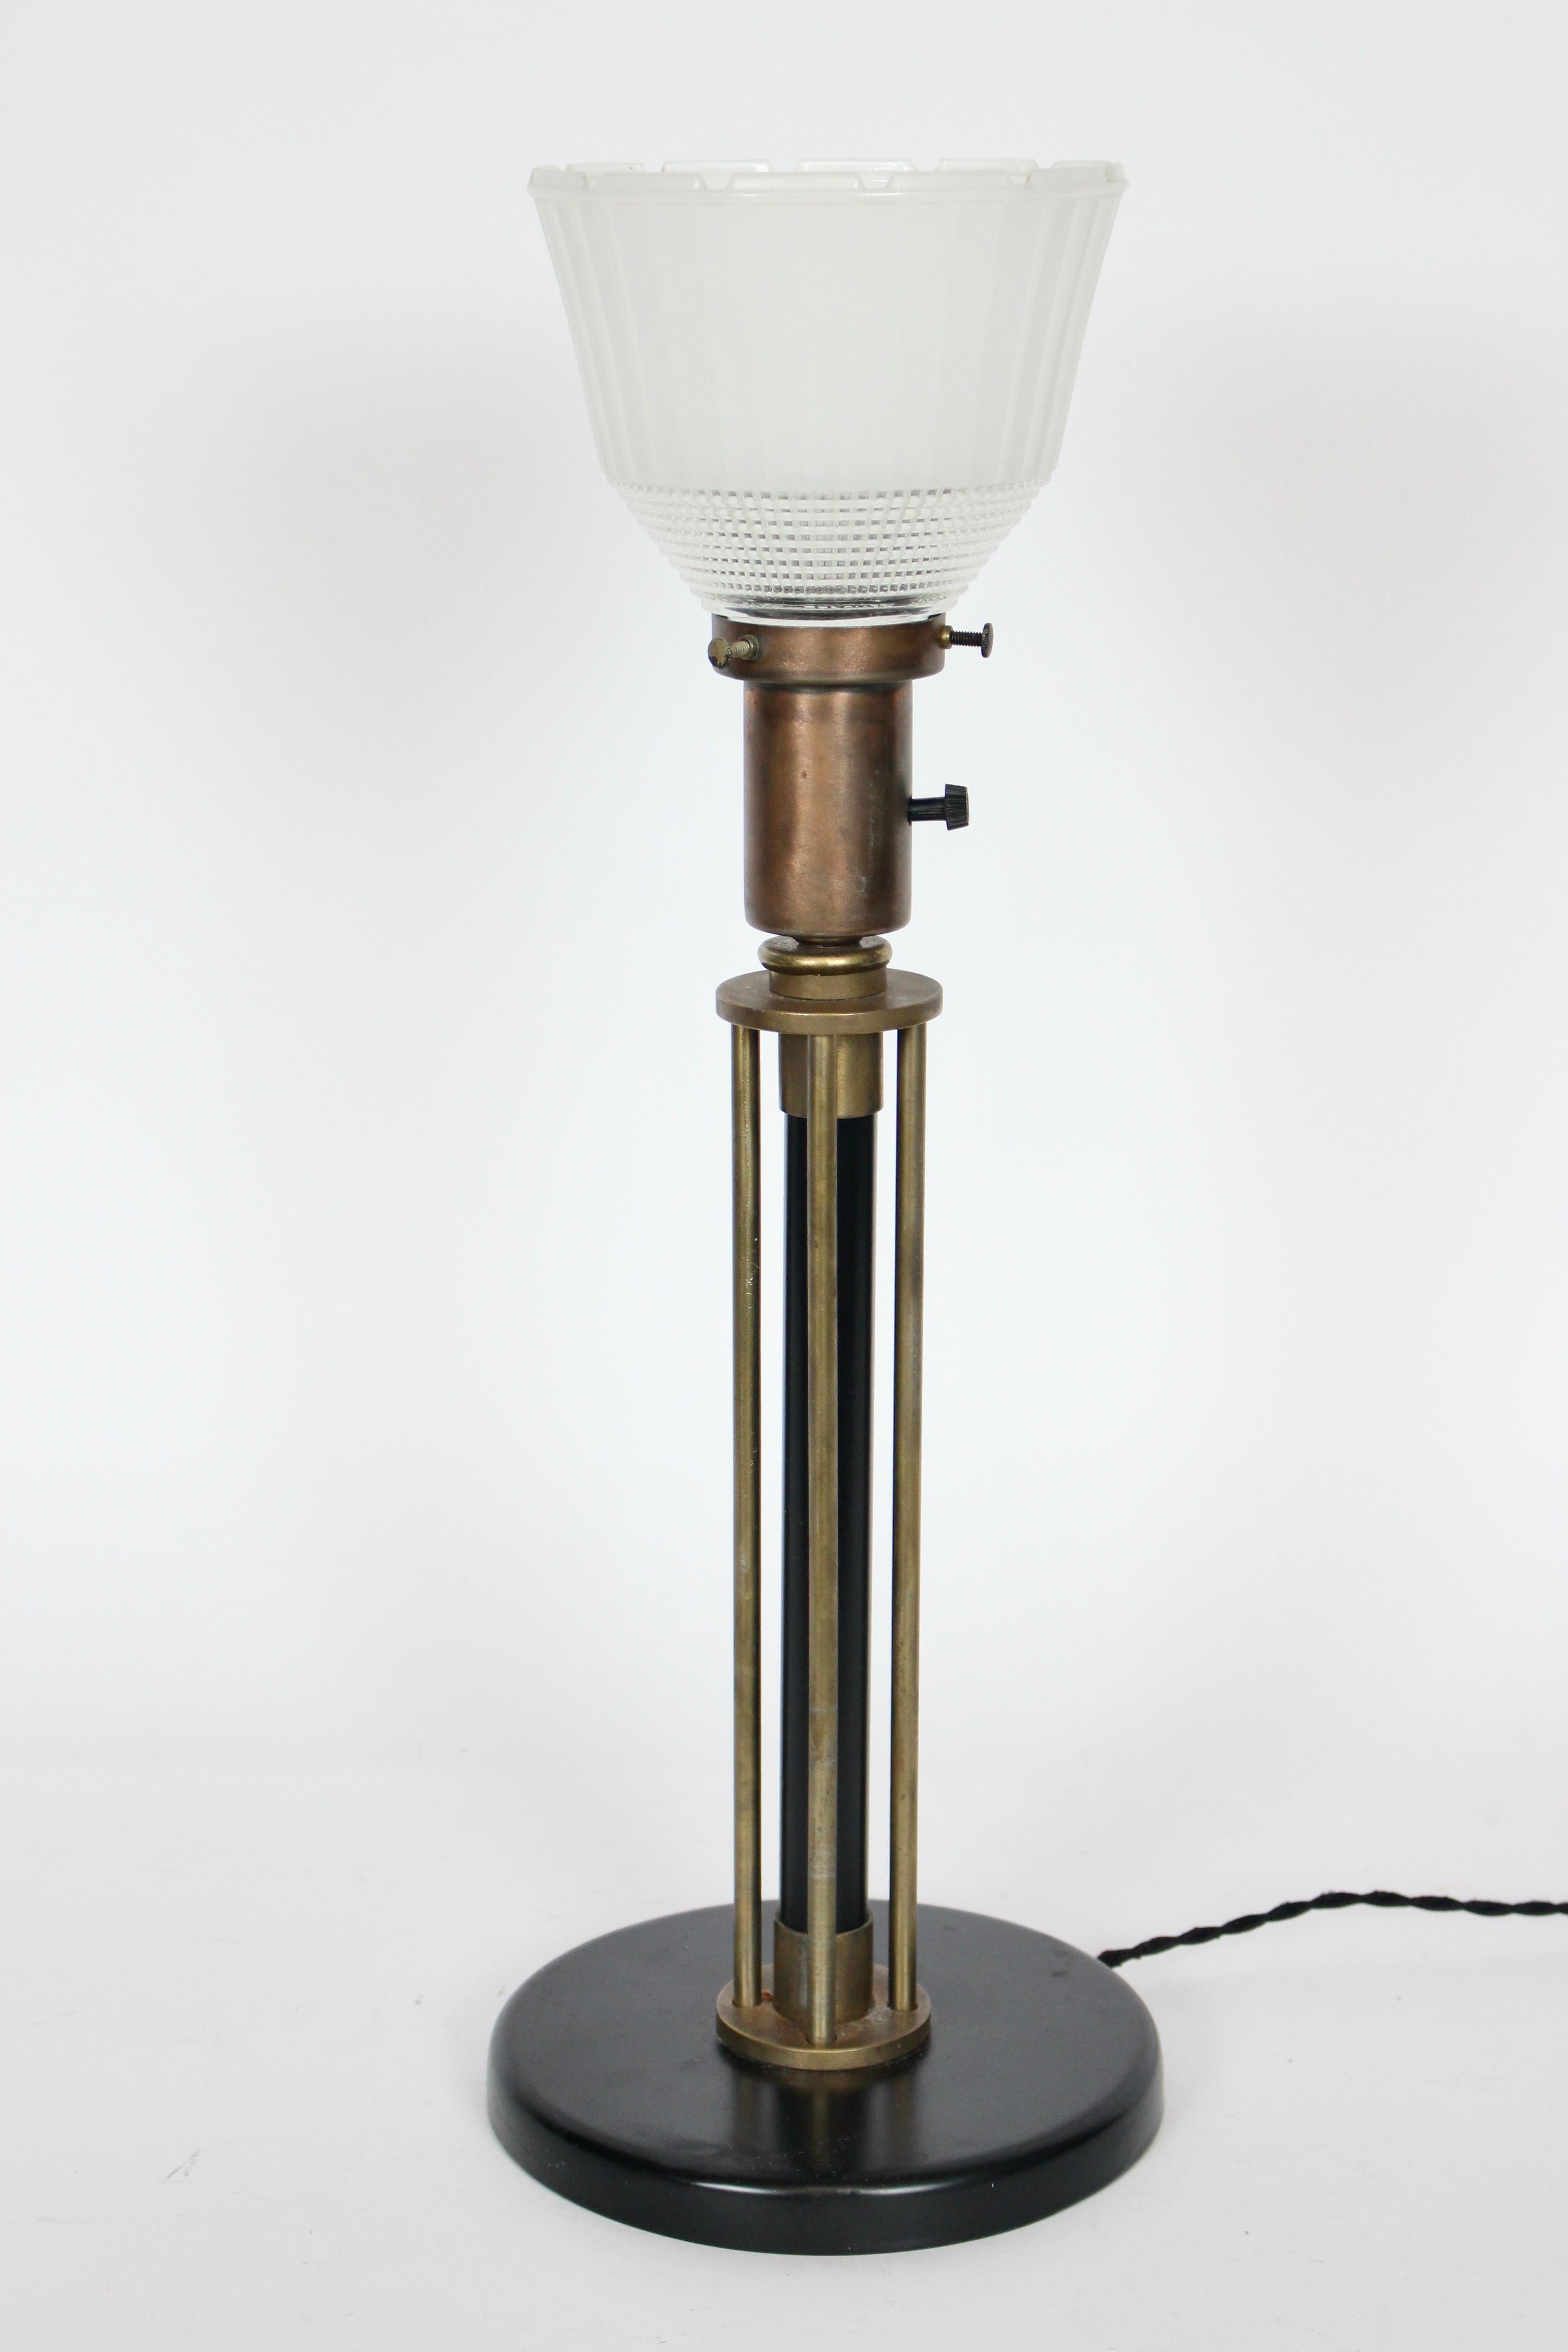 Walter Von Nessen Machine Age Black Enamel & Brass Table Lamp, 1940's For Sale 1